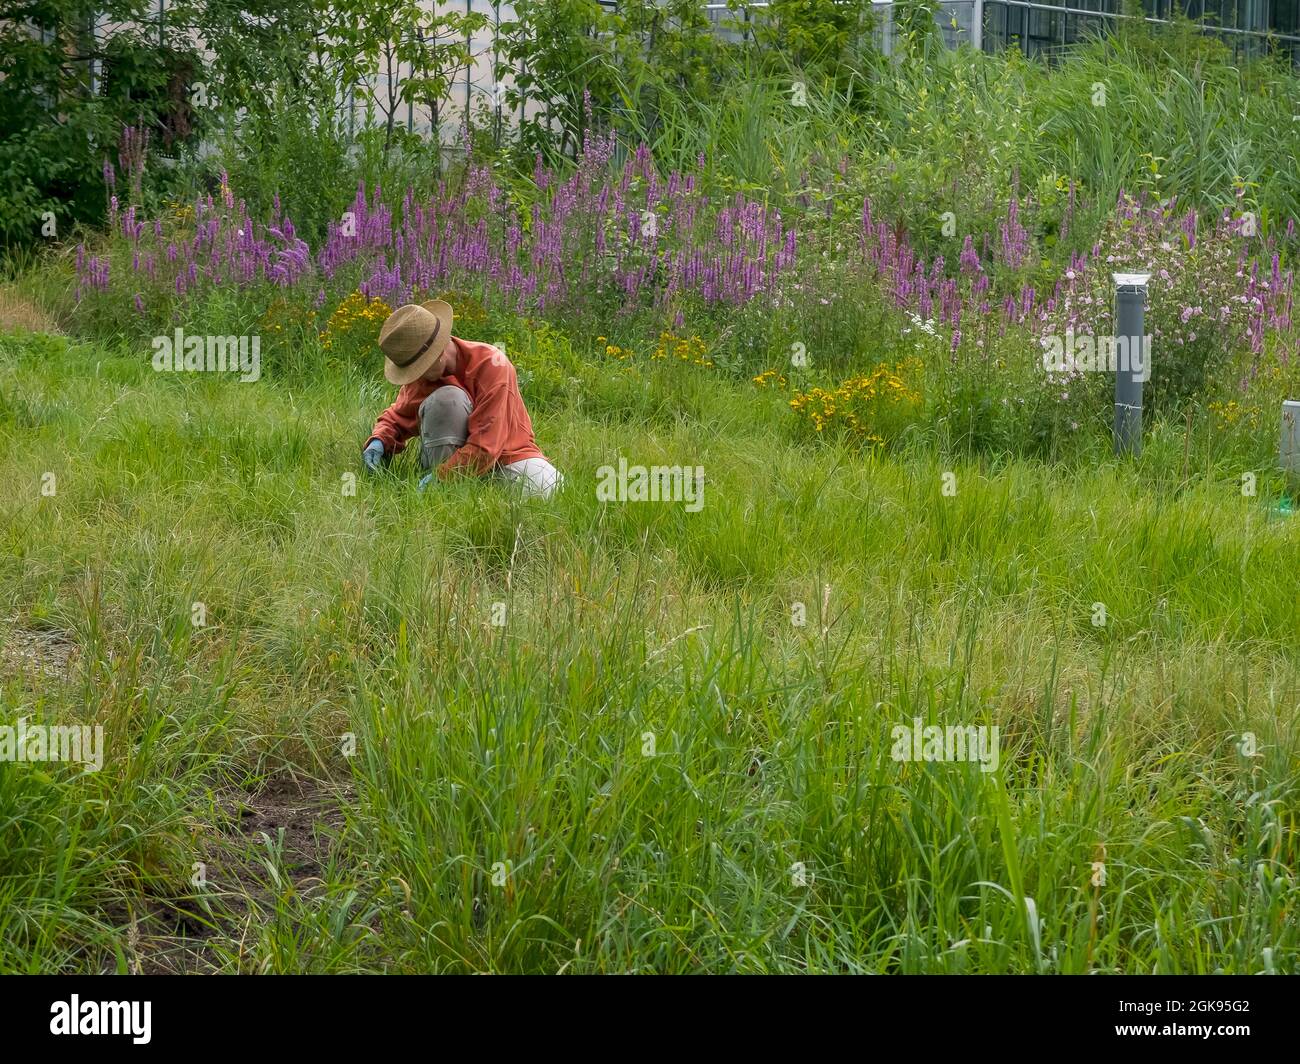 Gardening at the Botanical Gardens Flottbek, Germany, Hamburg-Flottbek, MR=Yes, Stock Photo